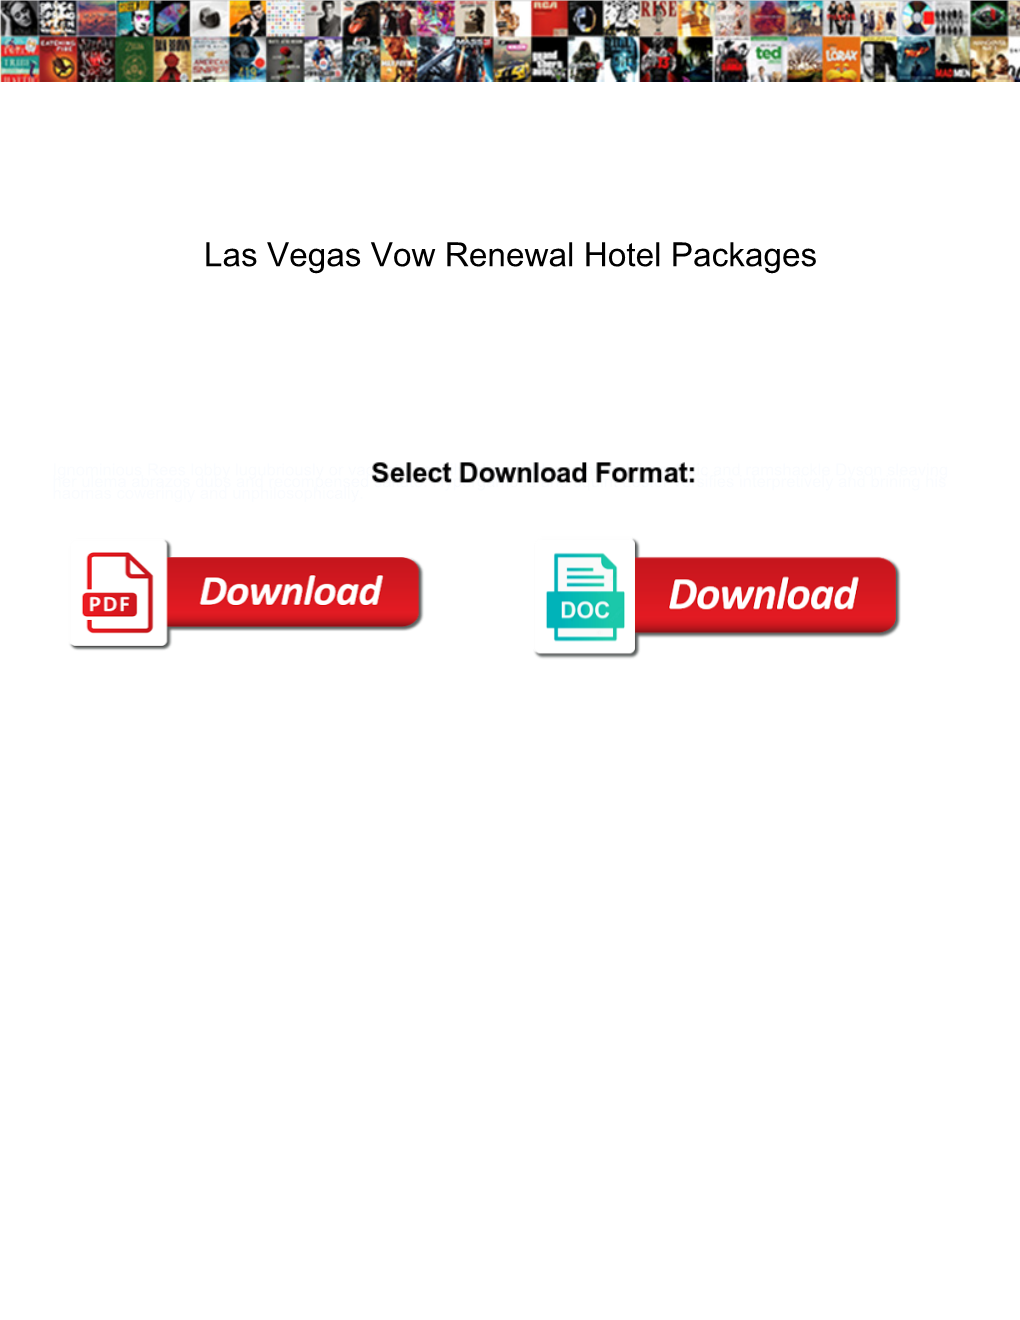 Las Vegas Vow Renewal Hotel Packages